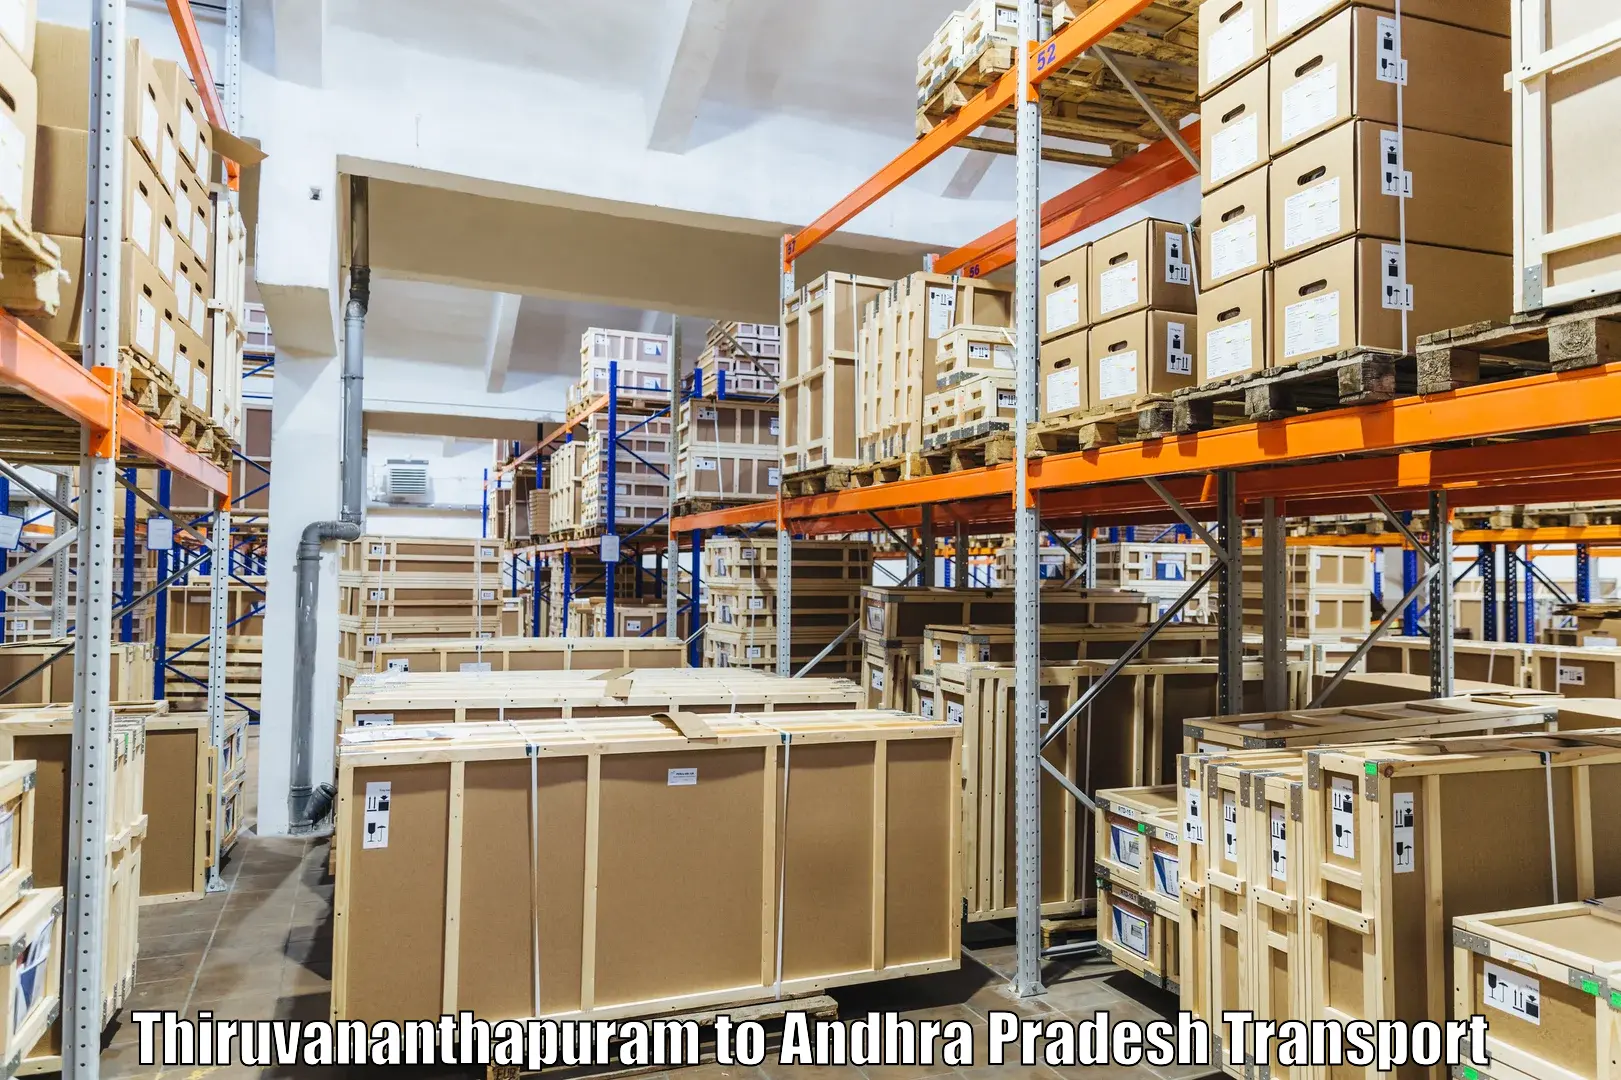 Truck transport companies in India Thiruvananthapuram to Narsapur